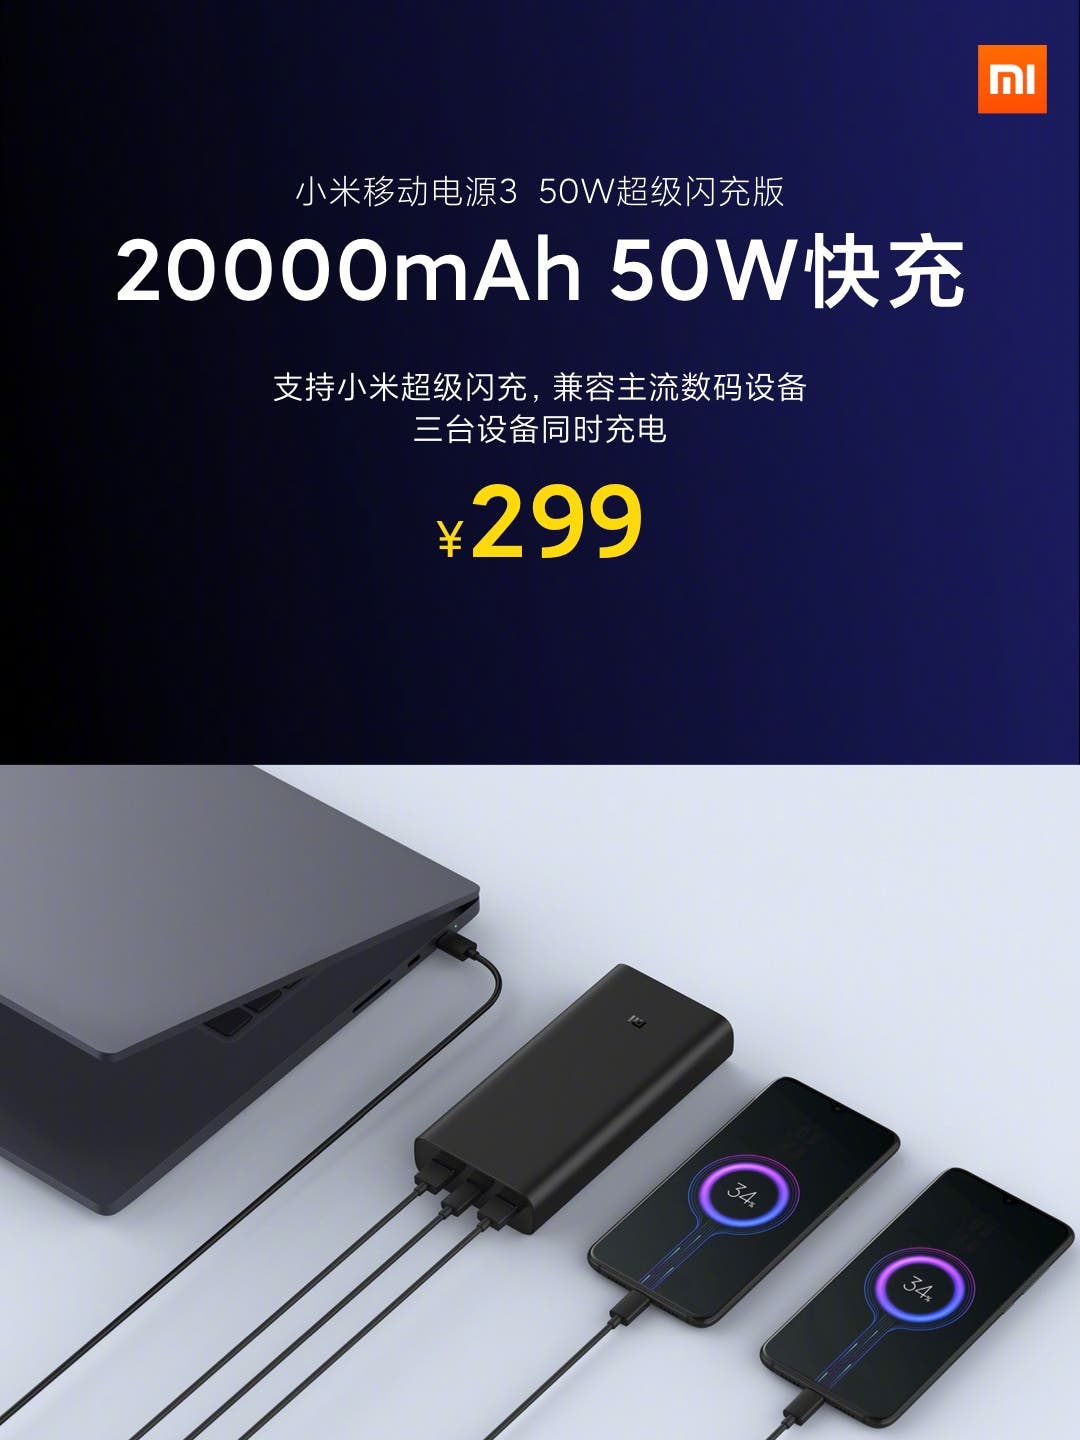 Xiaomi Mi powerbank 3